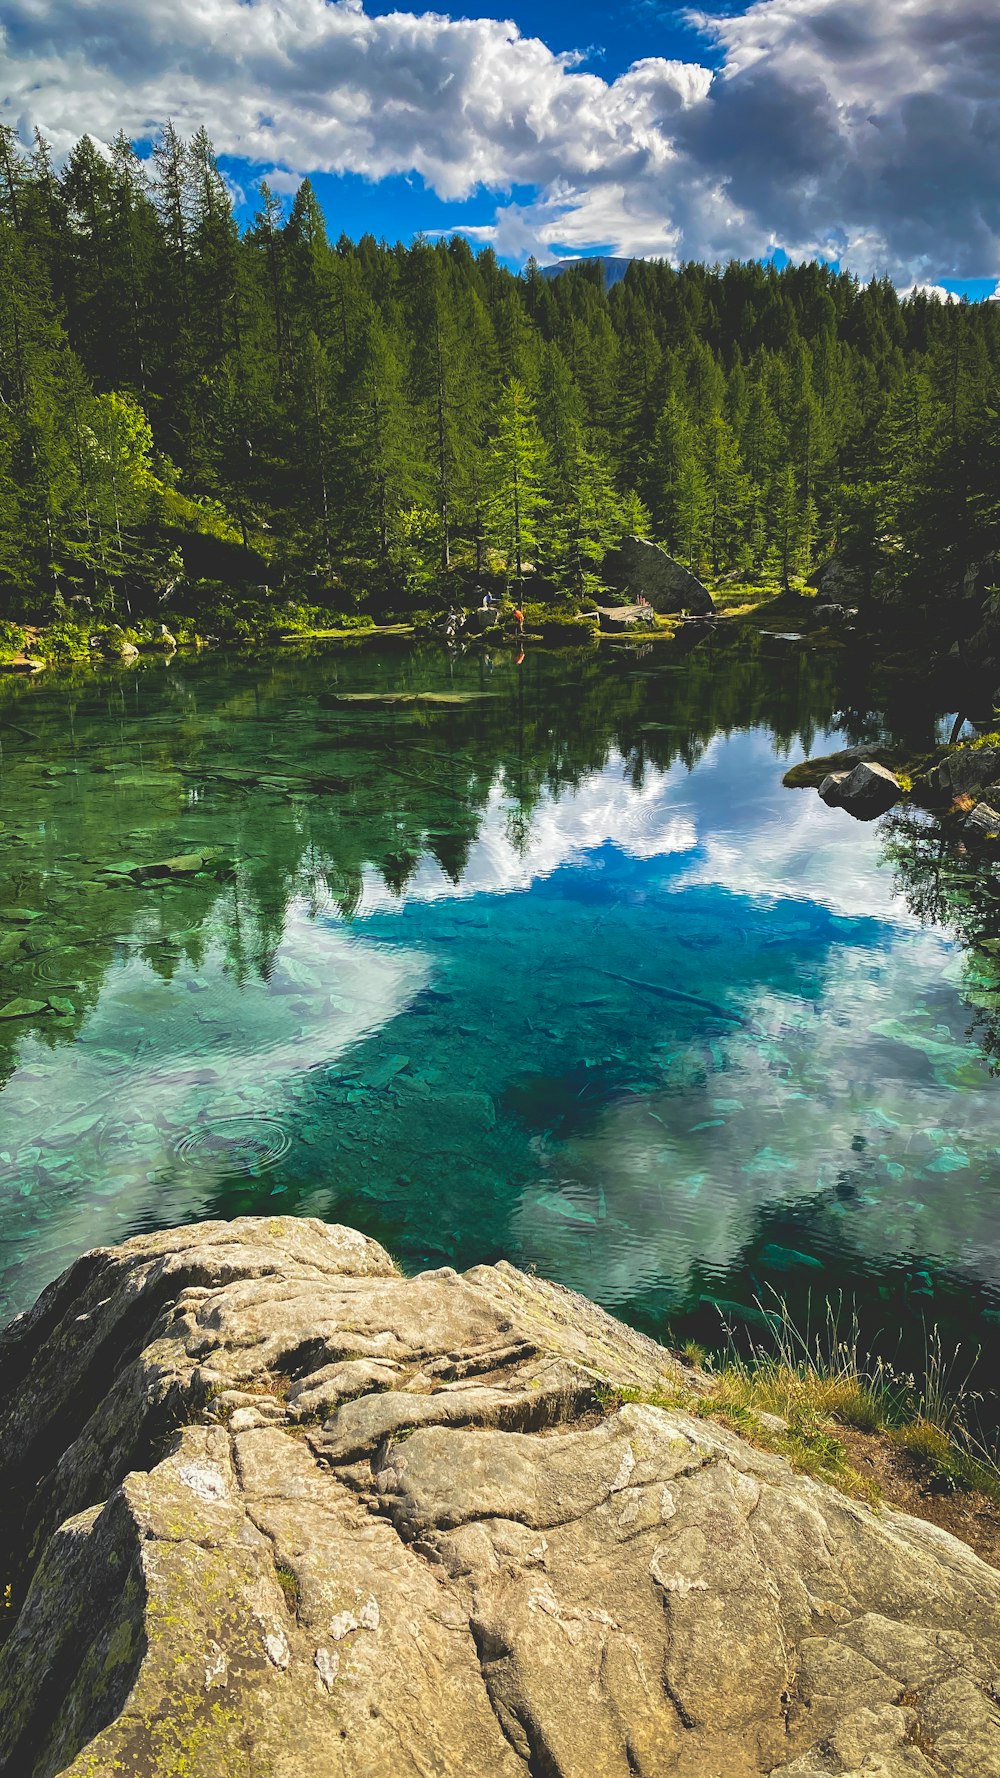 Lago azul rodeado de árboles verdes durante el día